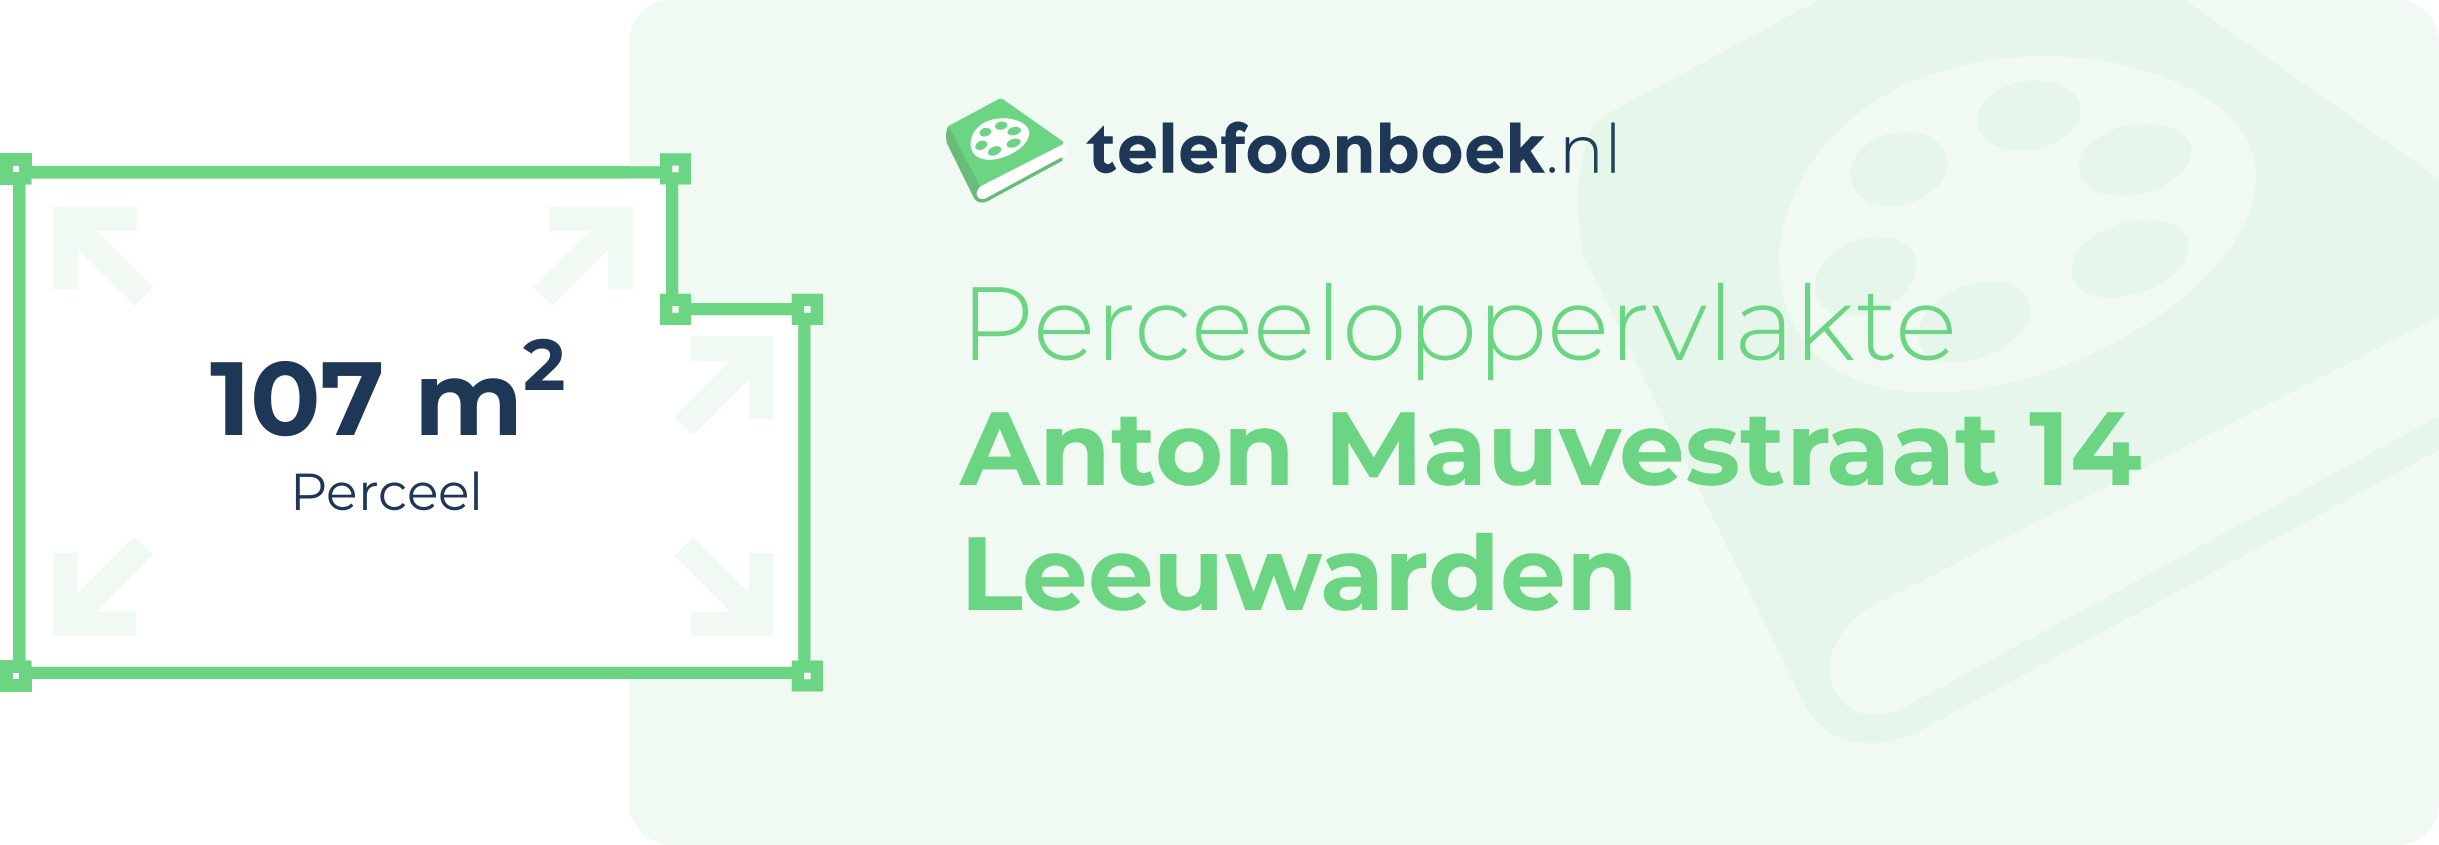 Perceeloppervlakte Anton Mauvestraat 14 Leeuwarden